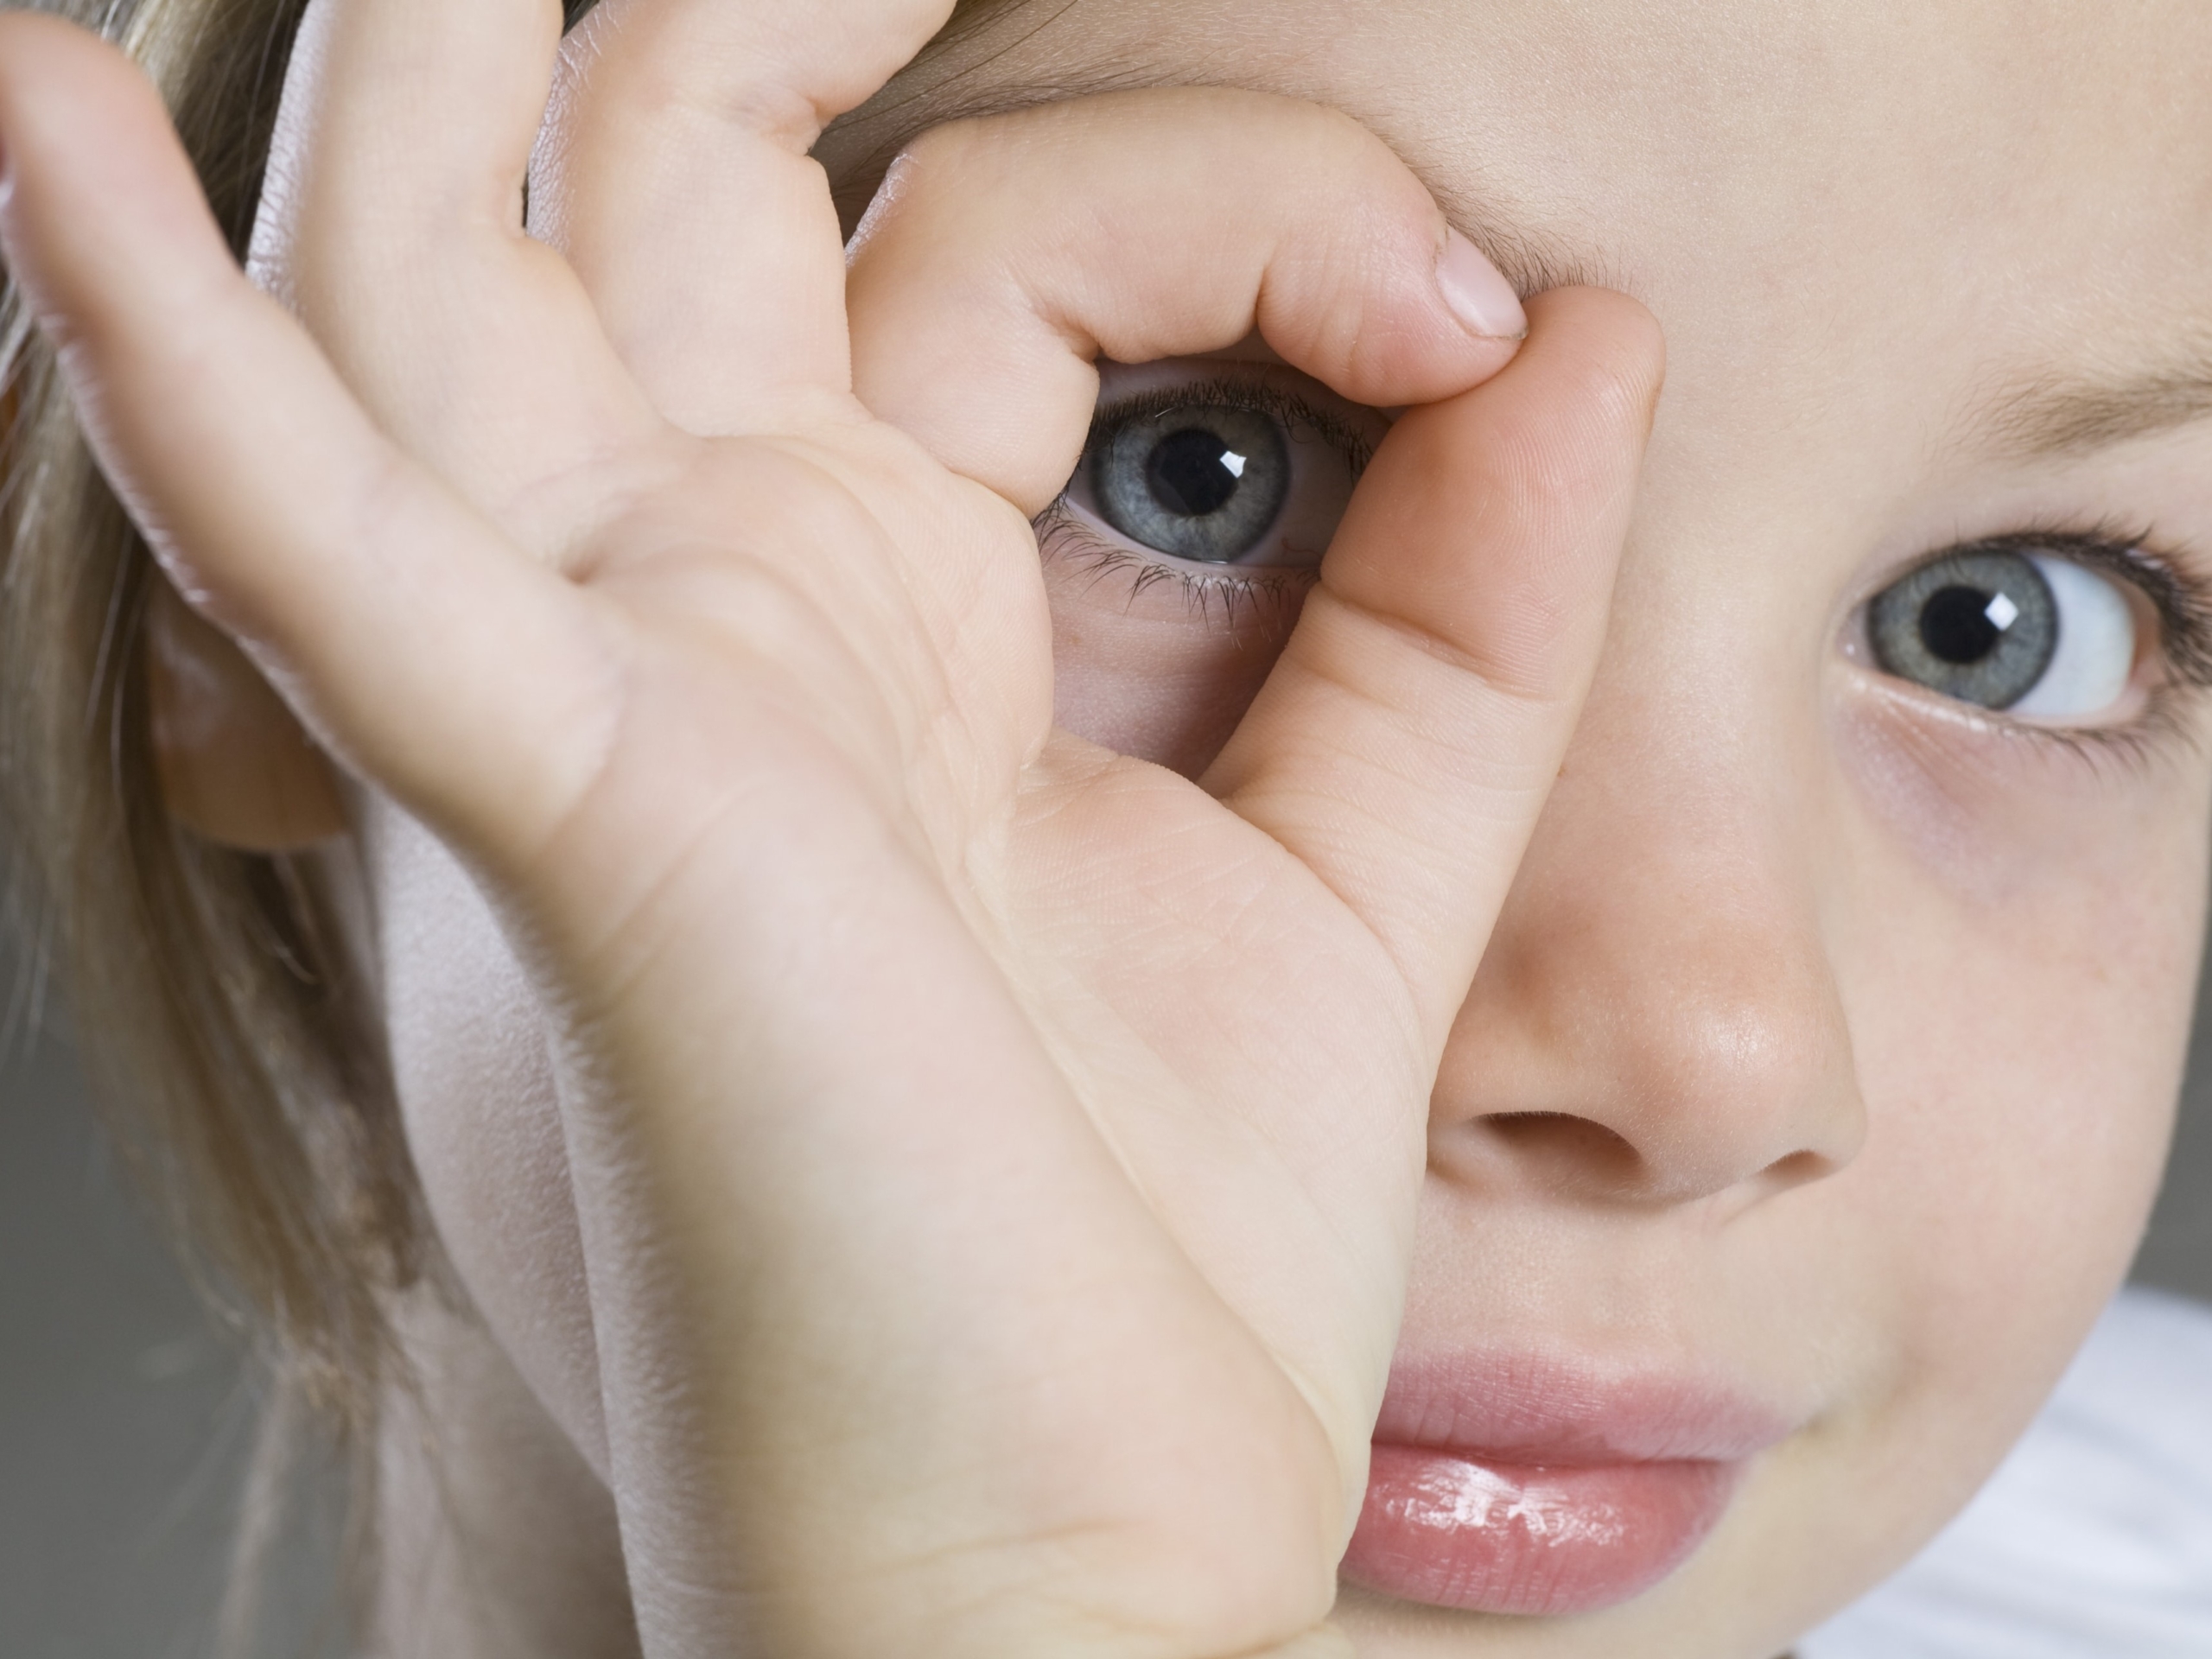 علایم اختلال حسی بینایی ( بدون تشخیص پزشکی مشکل بینایی )